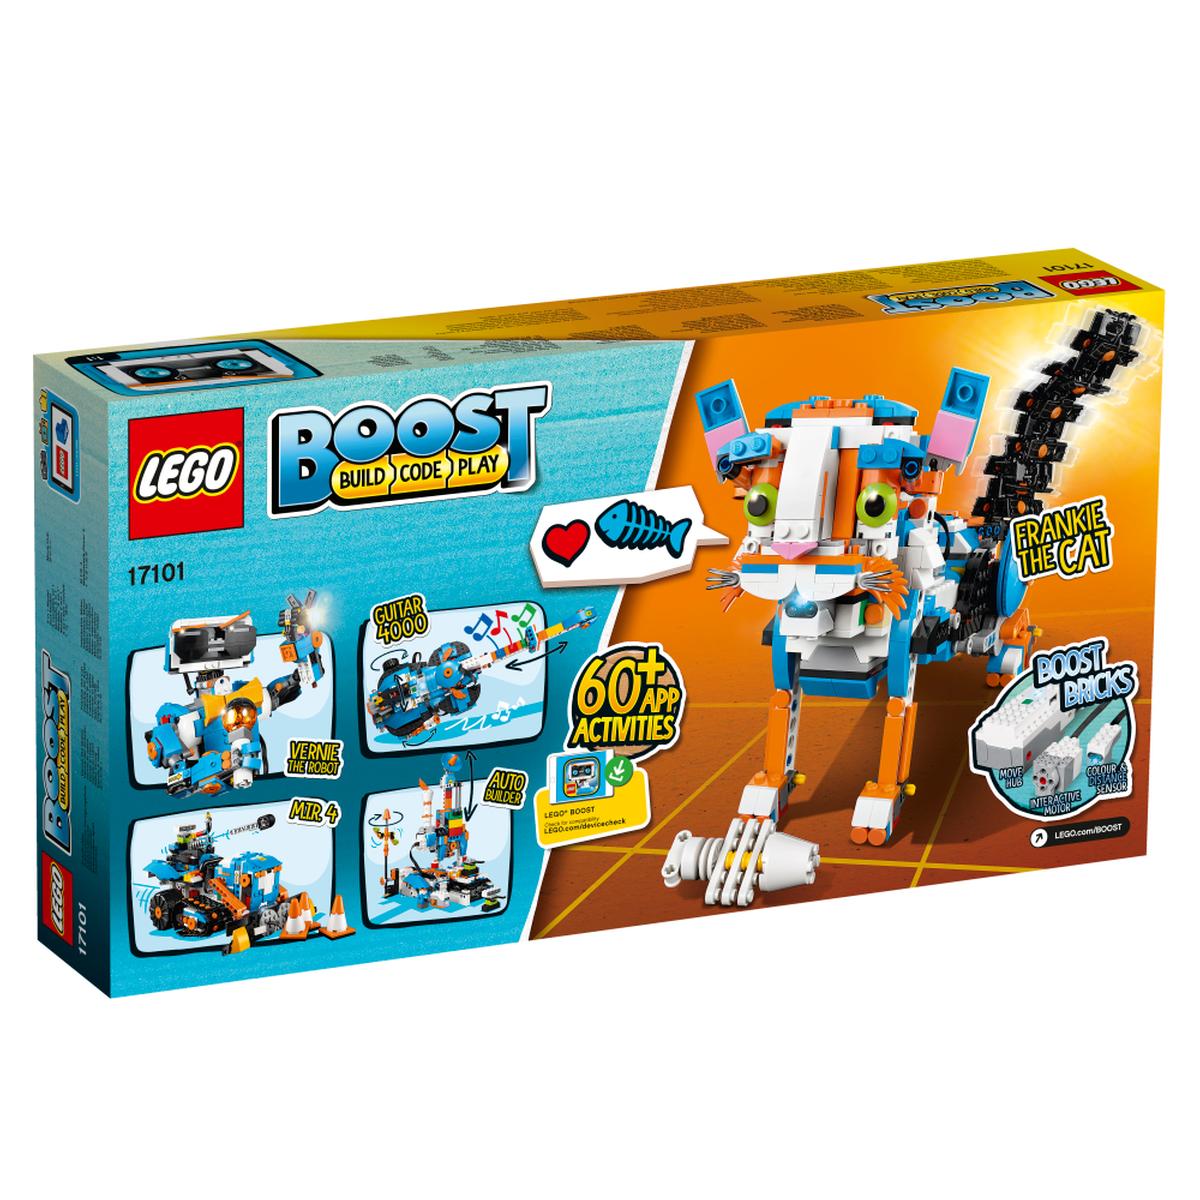 LEGO Boost - Caja de Herramientas Creativa - 17101 | Lego Otras Lineas |  Toys"R"Us España